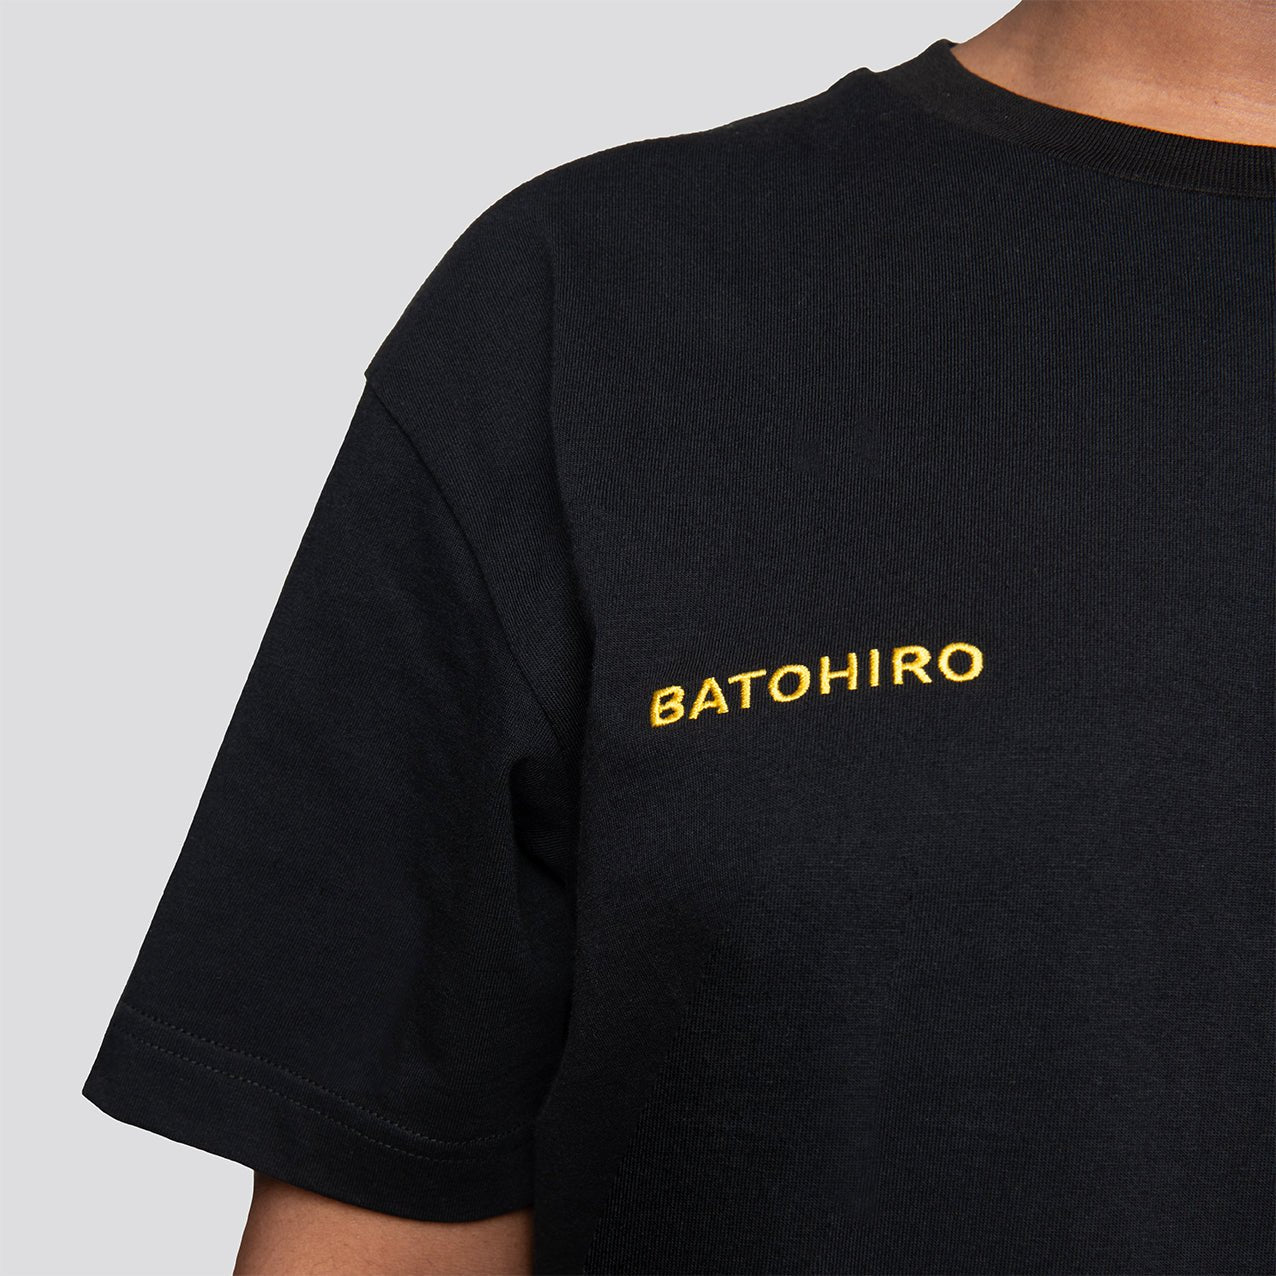 Oblečení - Batohiro